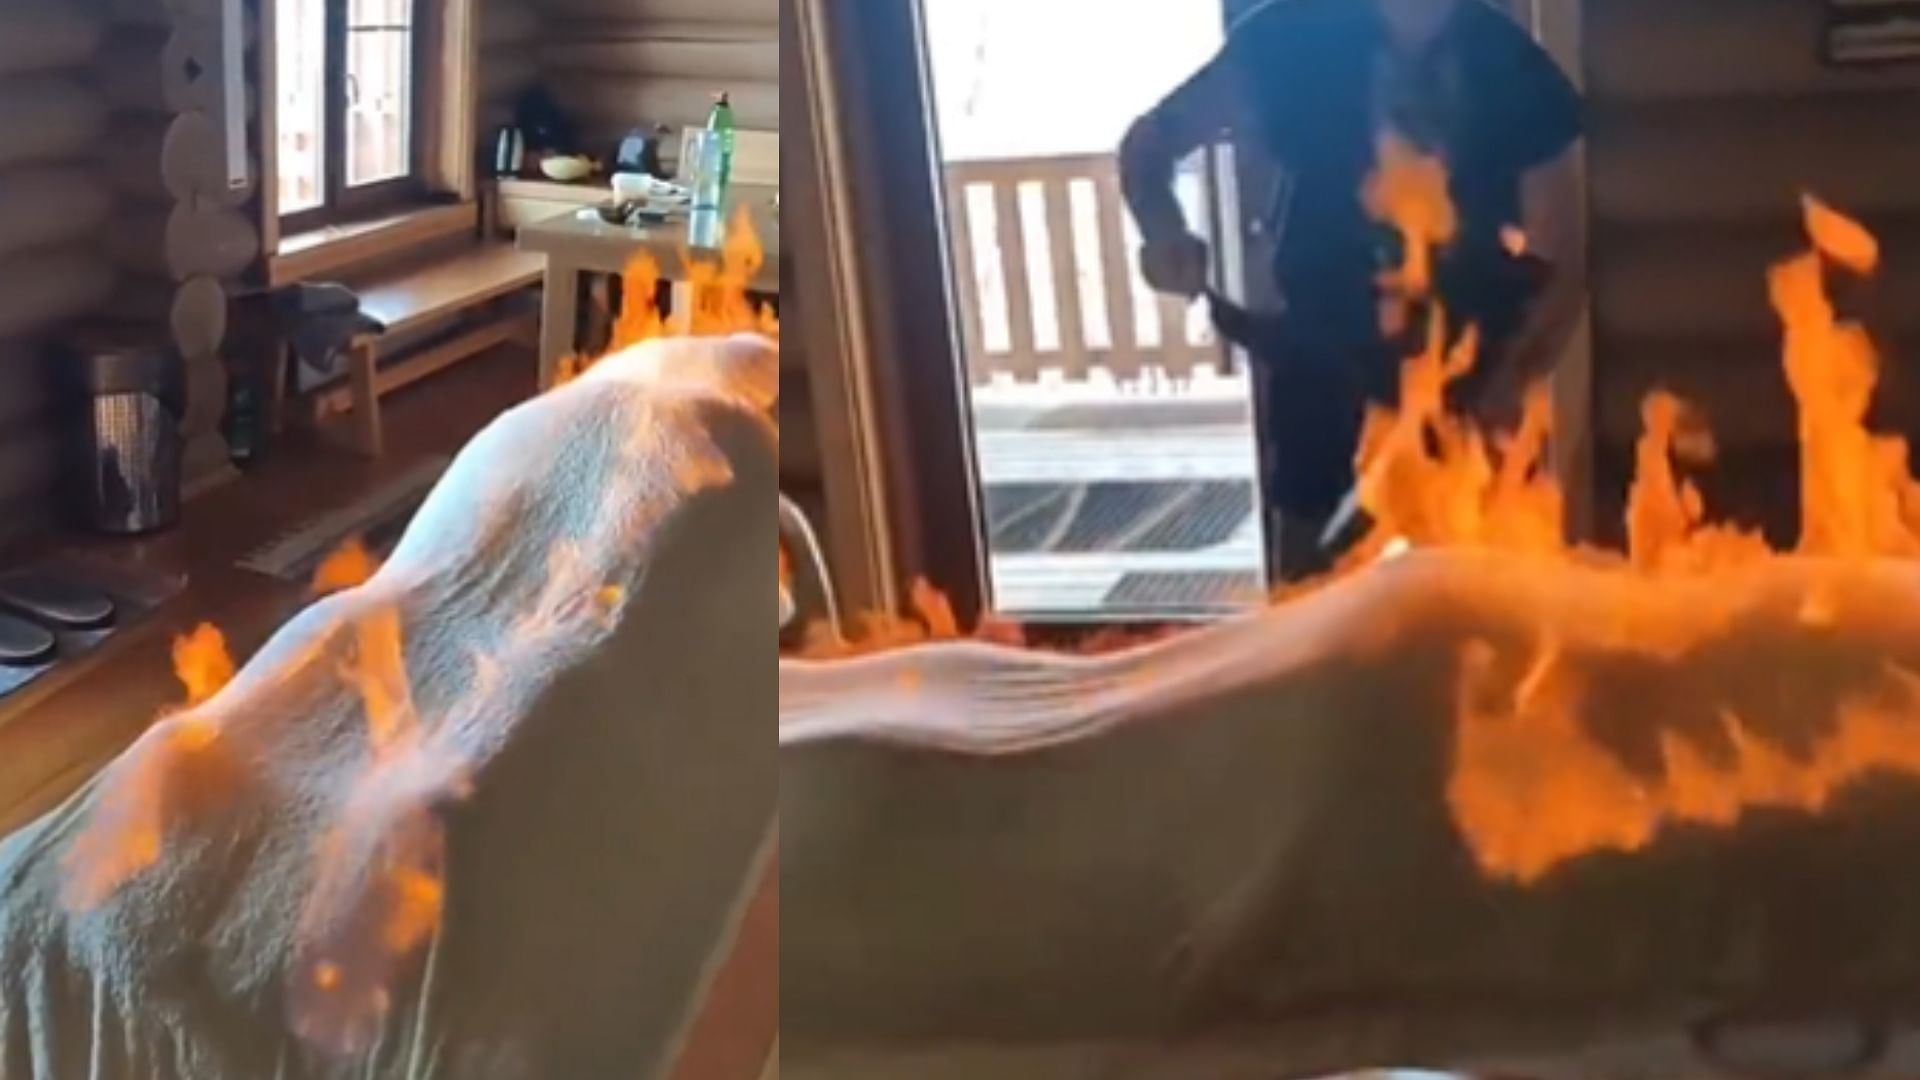 Weird Fire Body Massage Video Goes Viral On Social Media